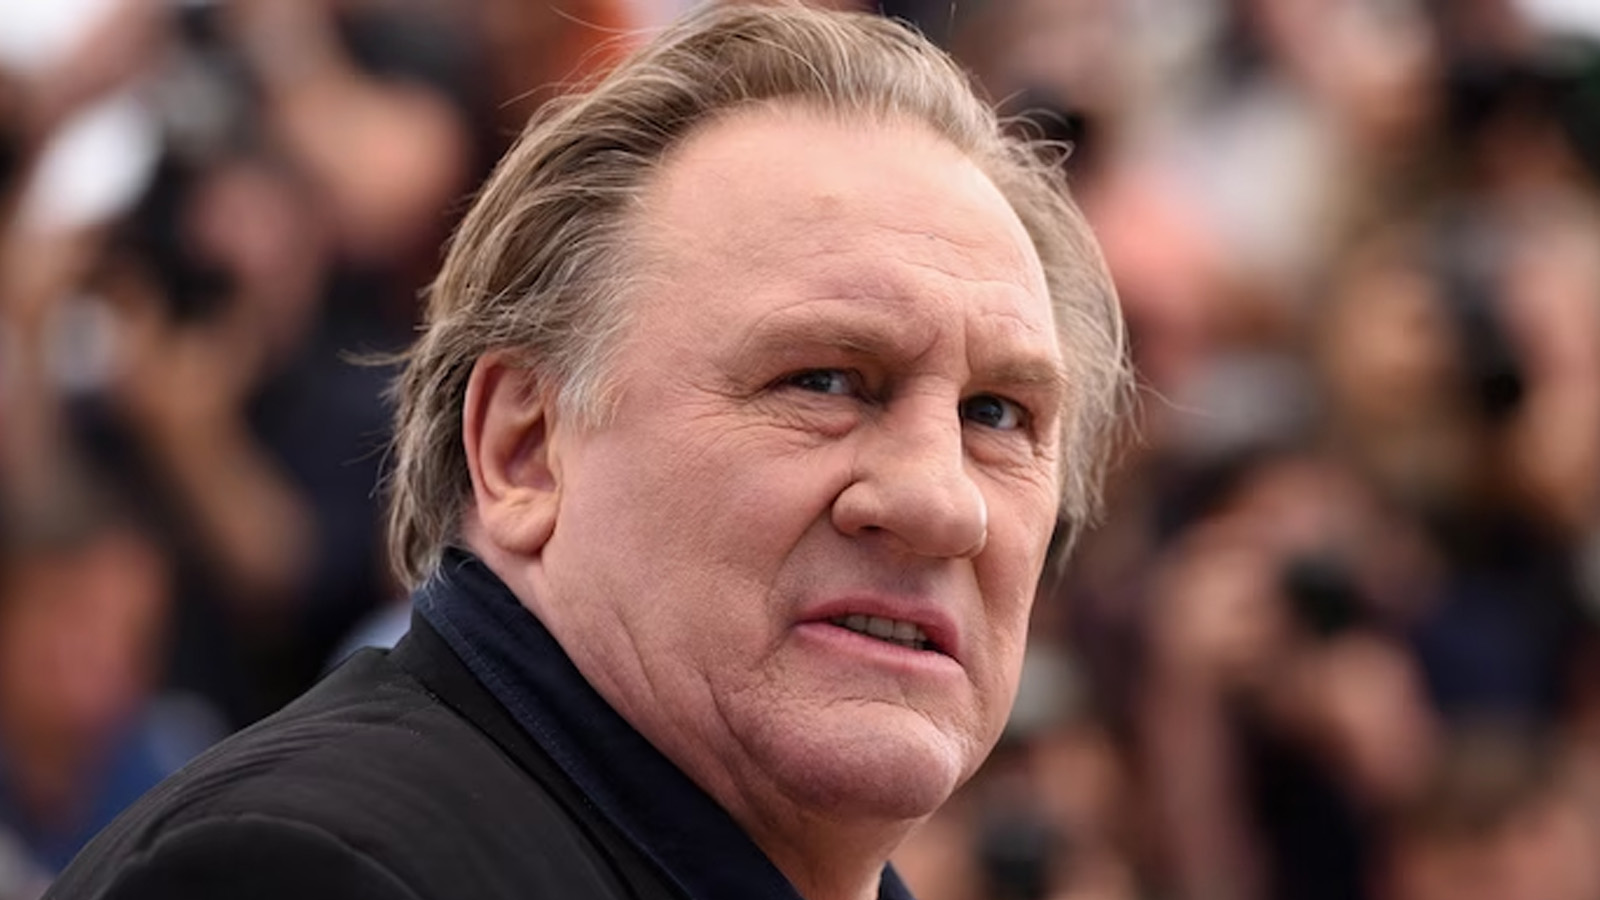 İsviçre kanalından Gérard Depardieu'nun filmlerini göstermeme kararı